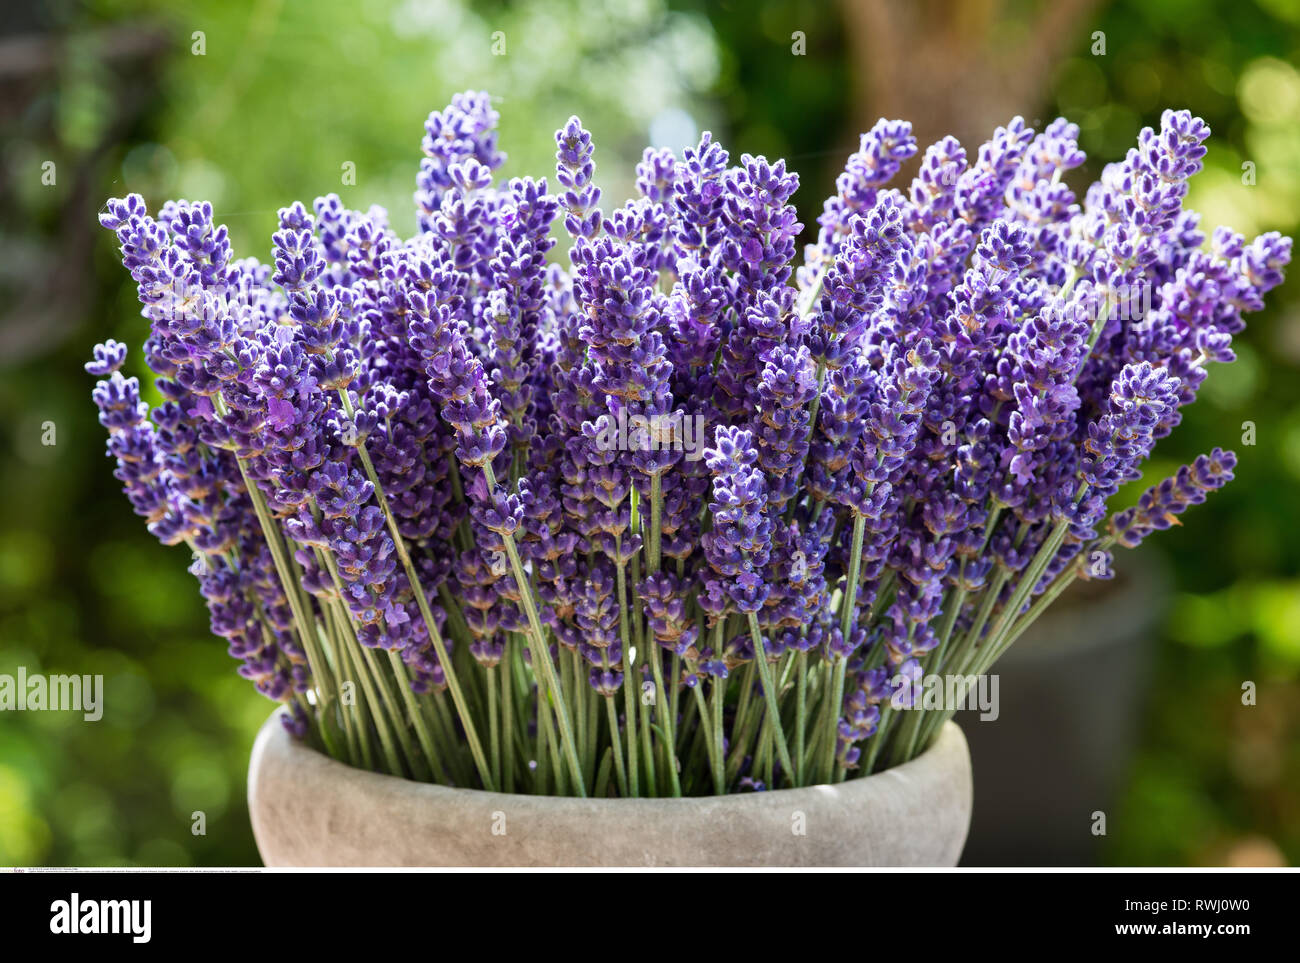 Botanik, sommerlicher Dekoration mit Lavendel, Vorsicht! Für Greetingcard-Use/Postcard-Use in deutschsprachigen Ländern gibt es einige Einschränkungen Stockfoto